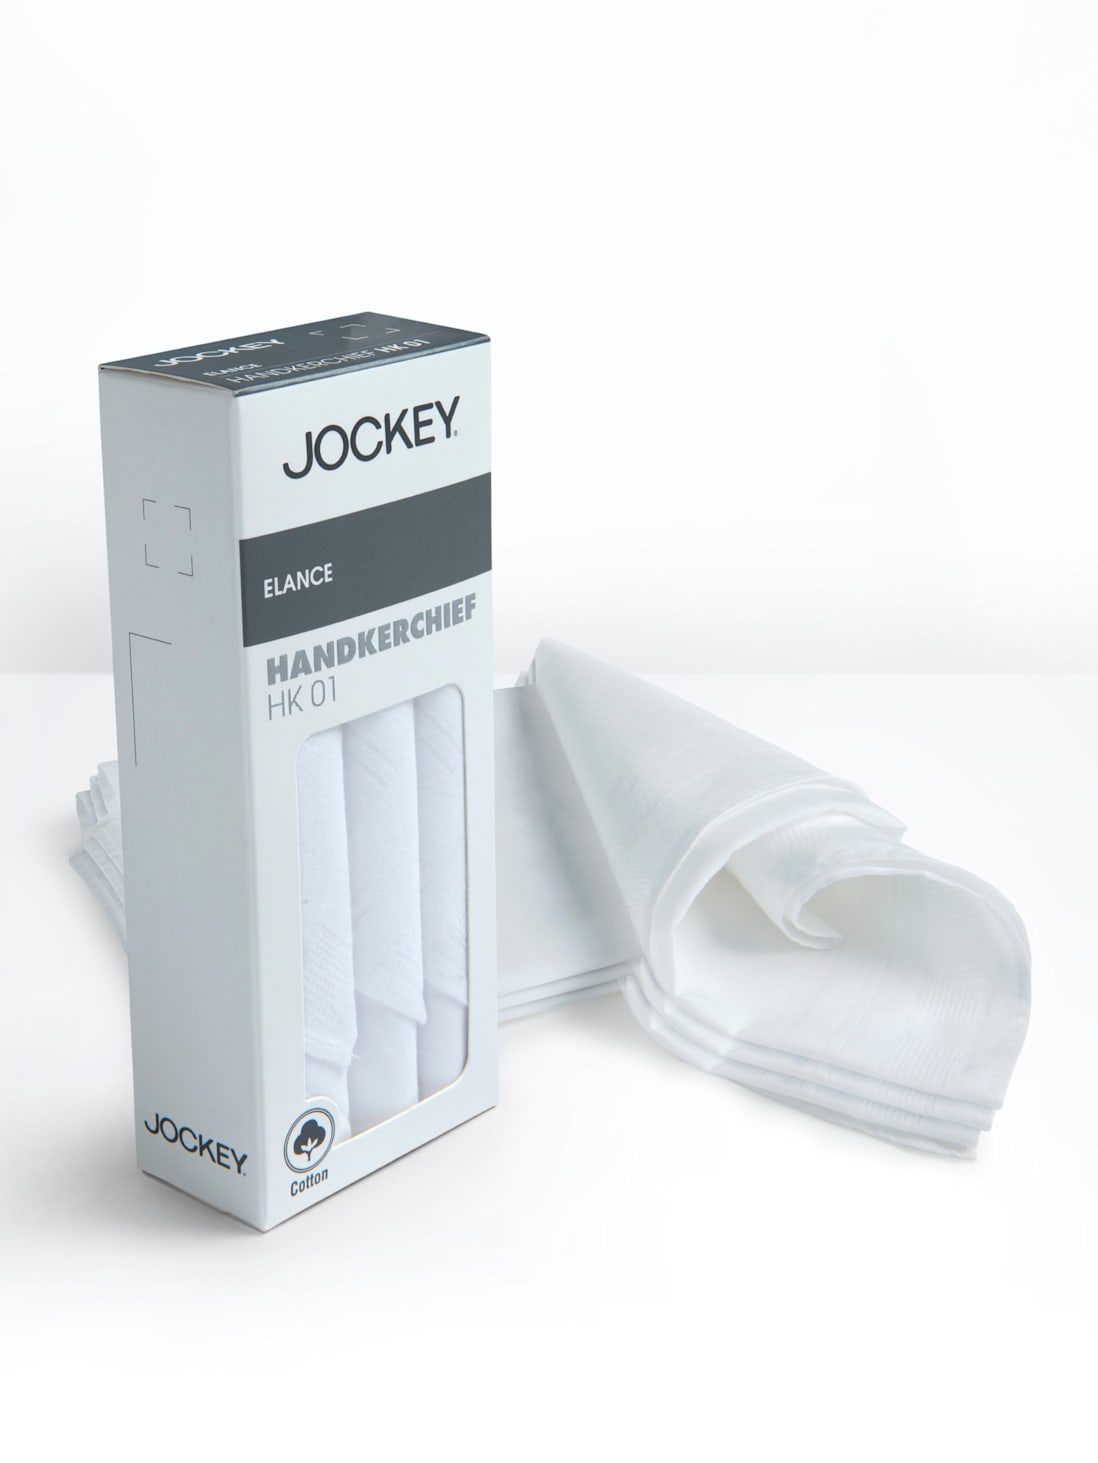 Men Handkerchief Pack of 3 Accessories HK01 White |Jockey India